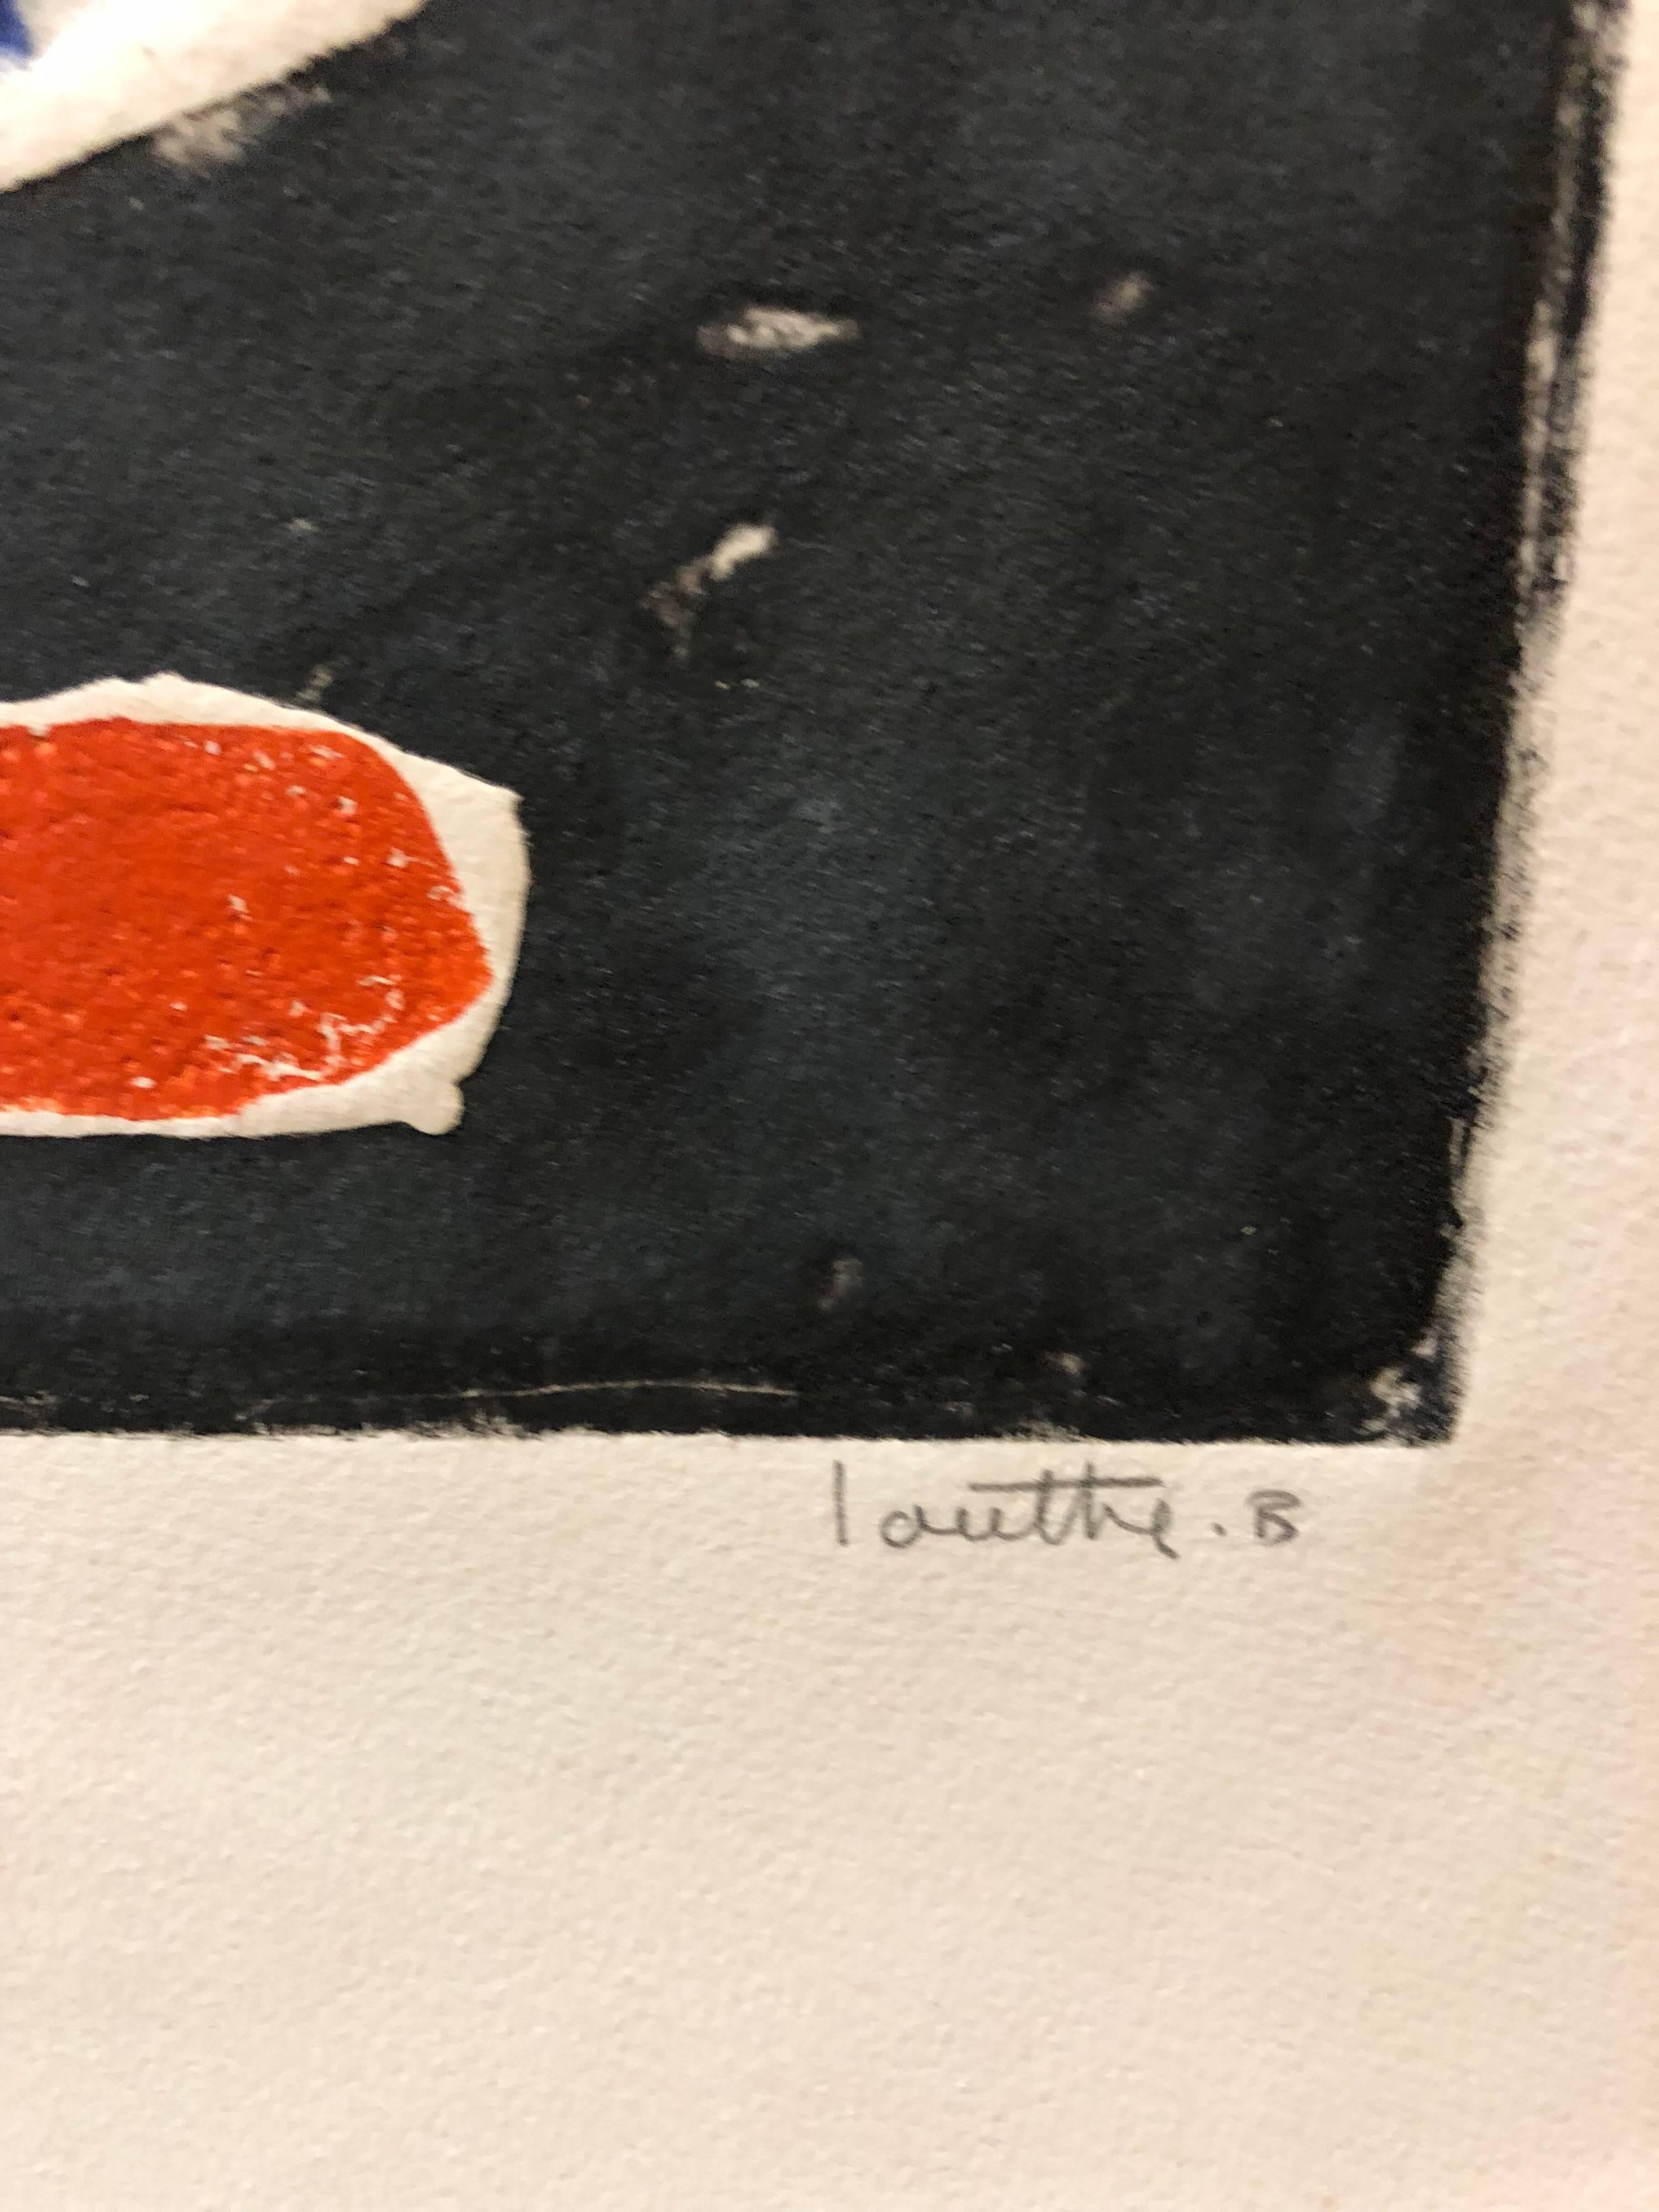 Grande gravure abstraite moderniste française à l'aquatinte en relief signée au crayon  - Noir Abstract Print par Louttre B. (Marc-Antoine Bissiere)